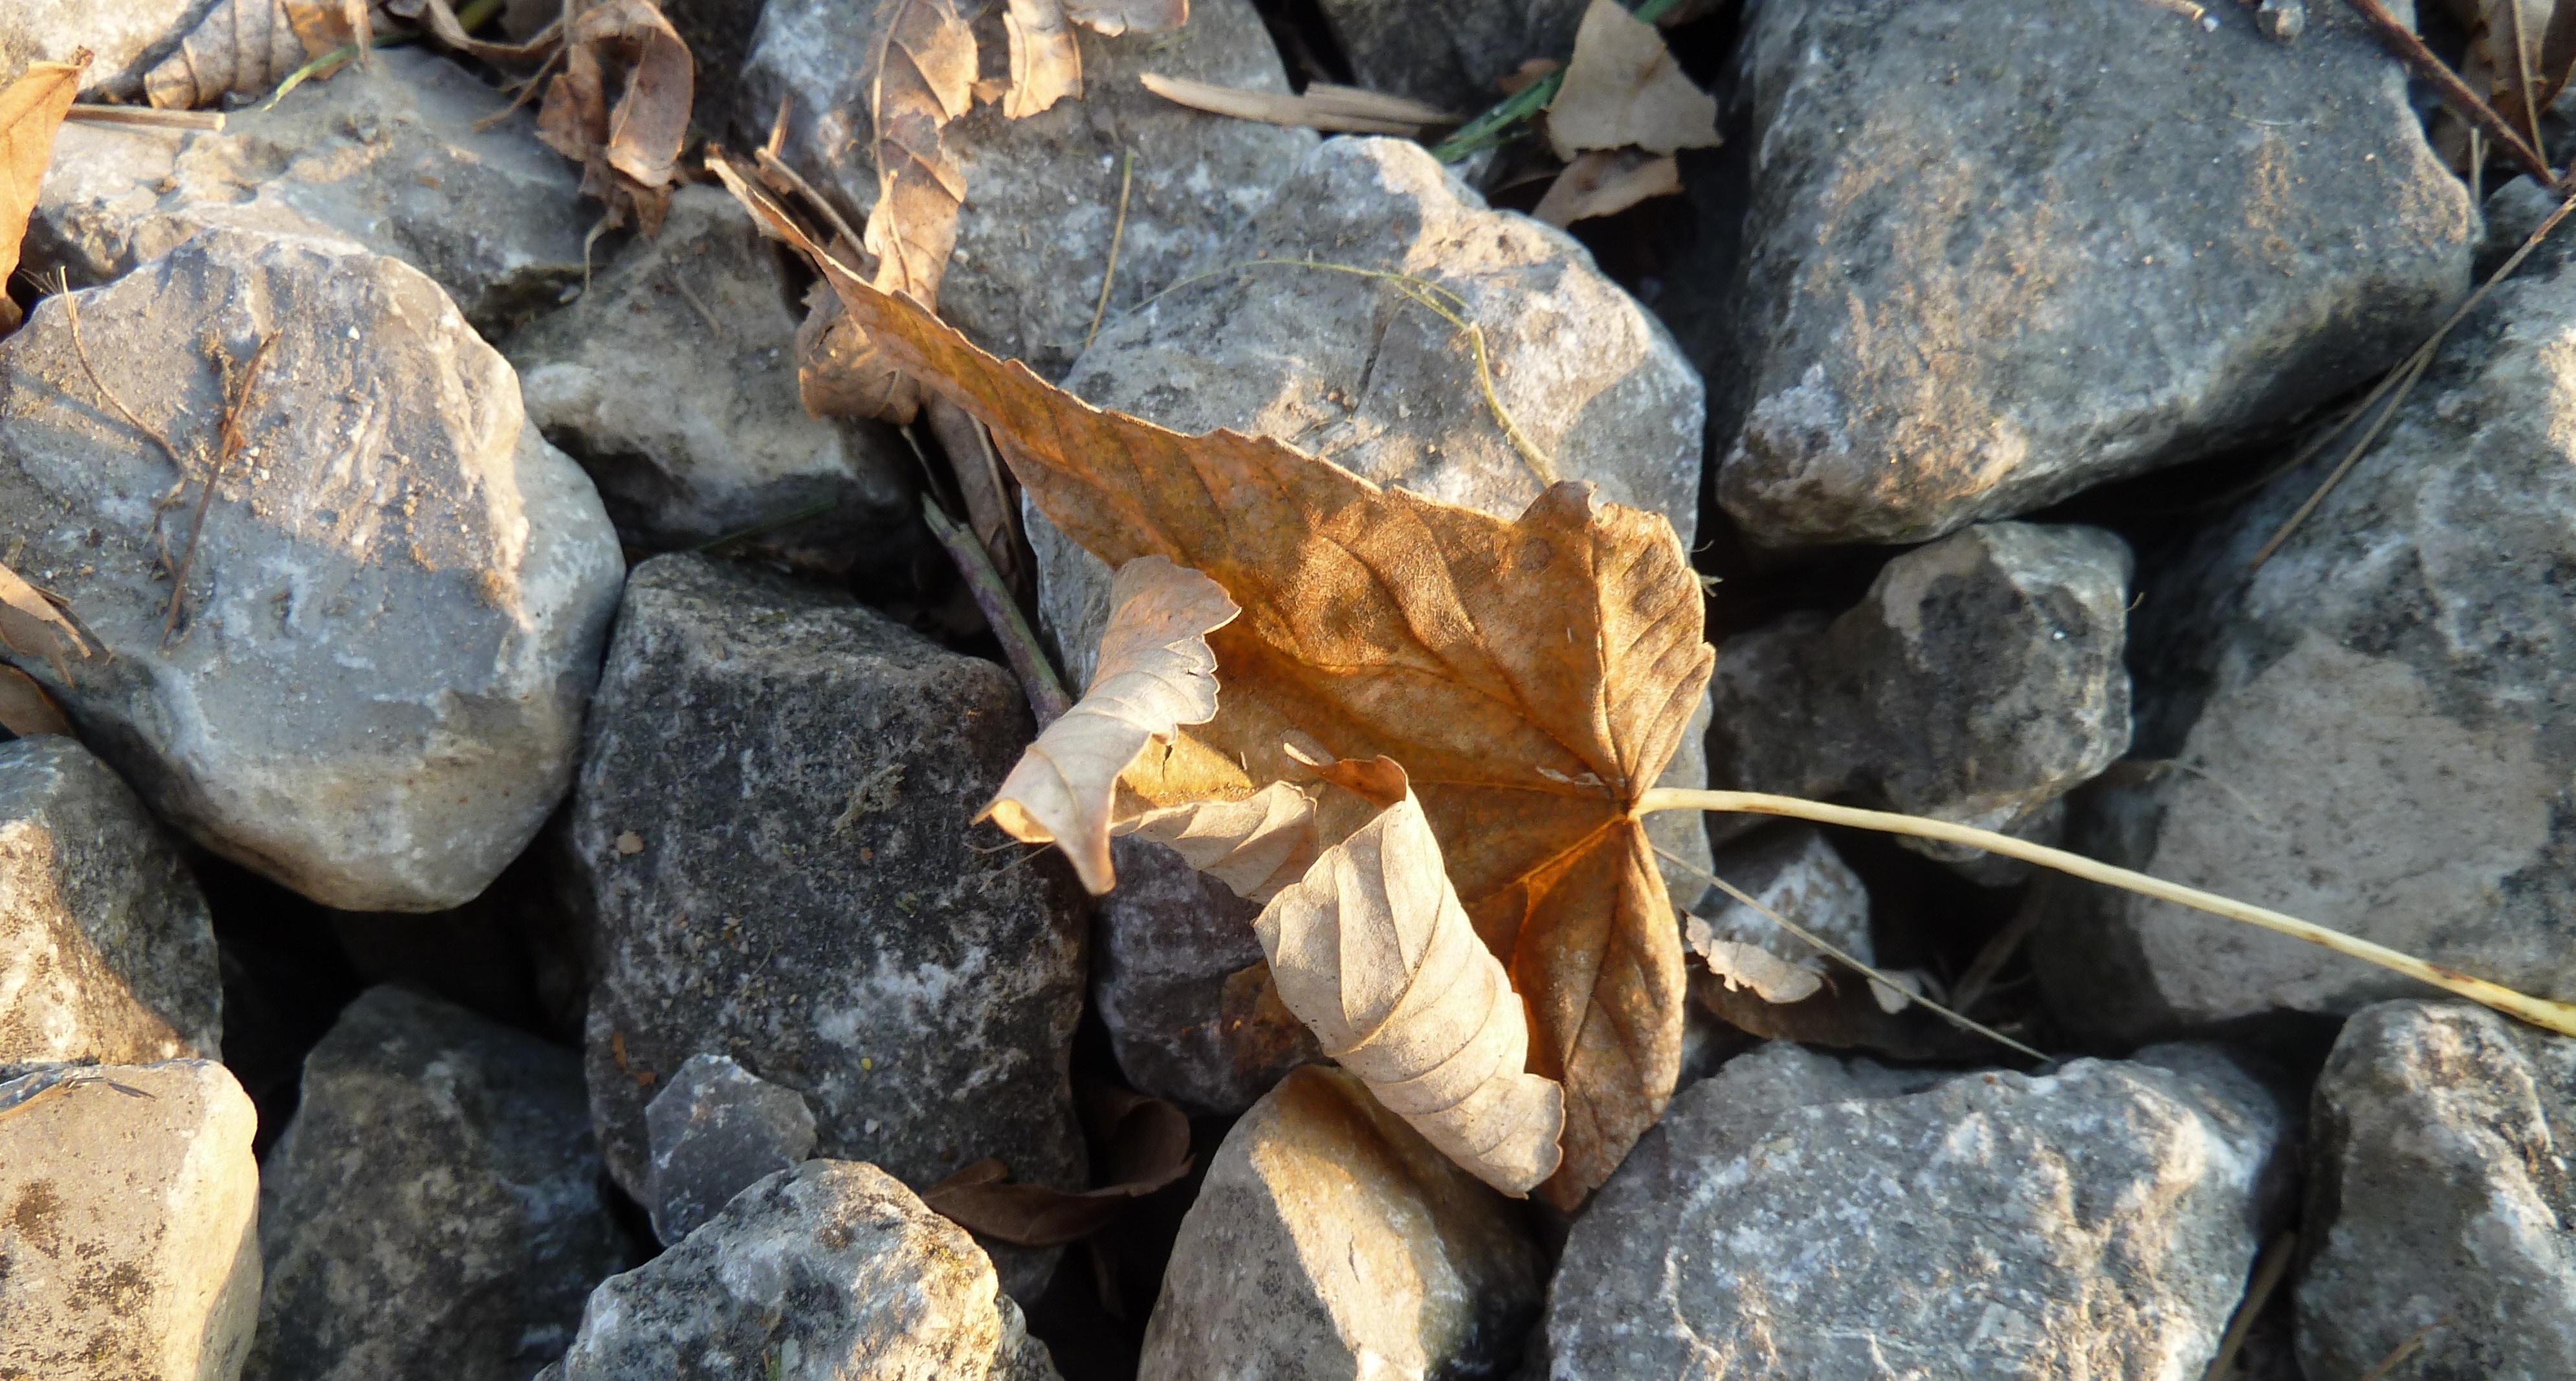 Leaf stone. Листовой камень. Каменный лист. Листья на камнях. Дерево среди камней листья.